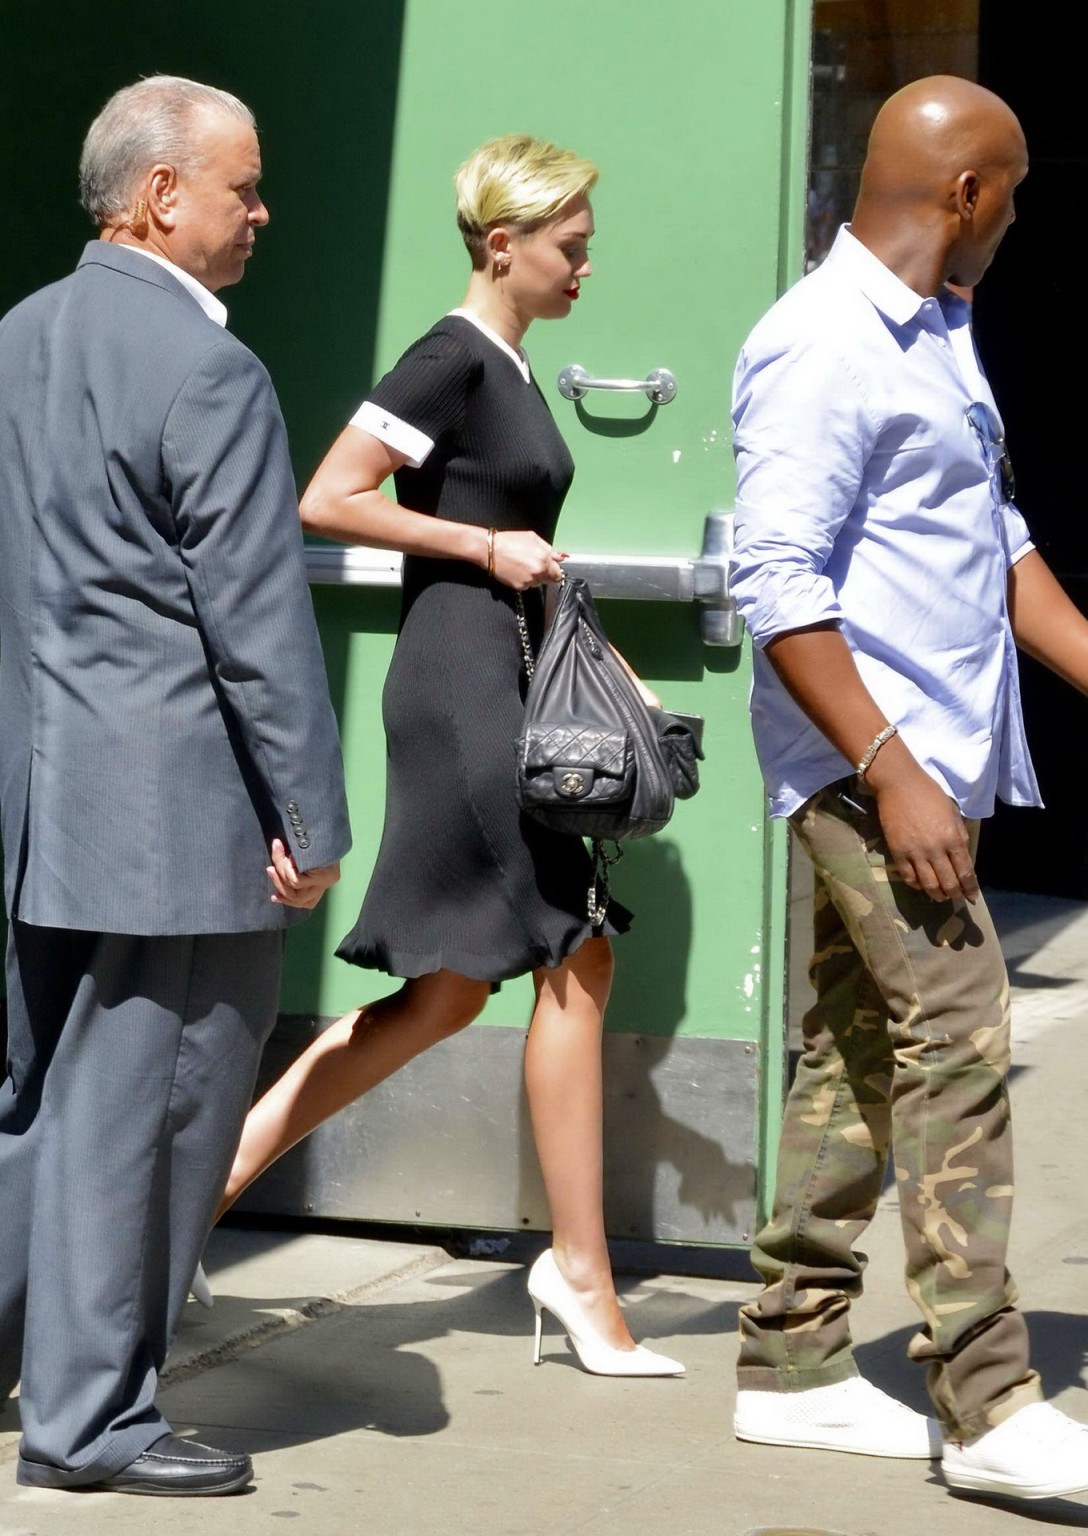 Miley cyrus mostrando sus tetas braless en vestido negro transparente en nyc
 #75224545